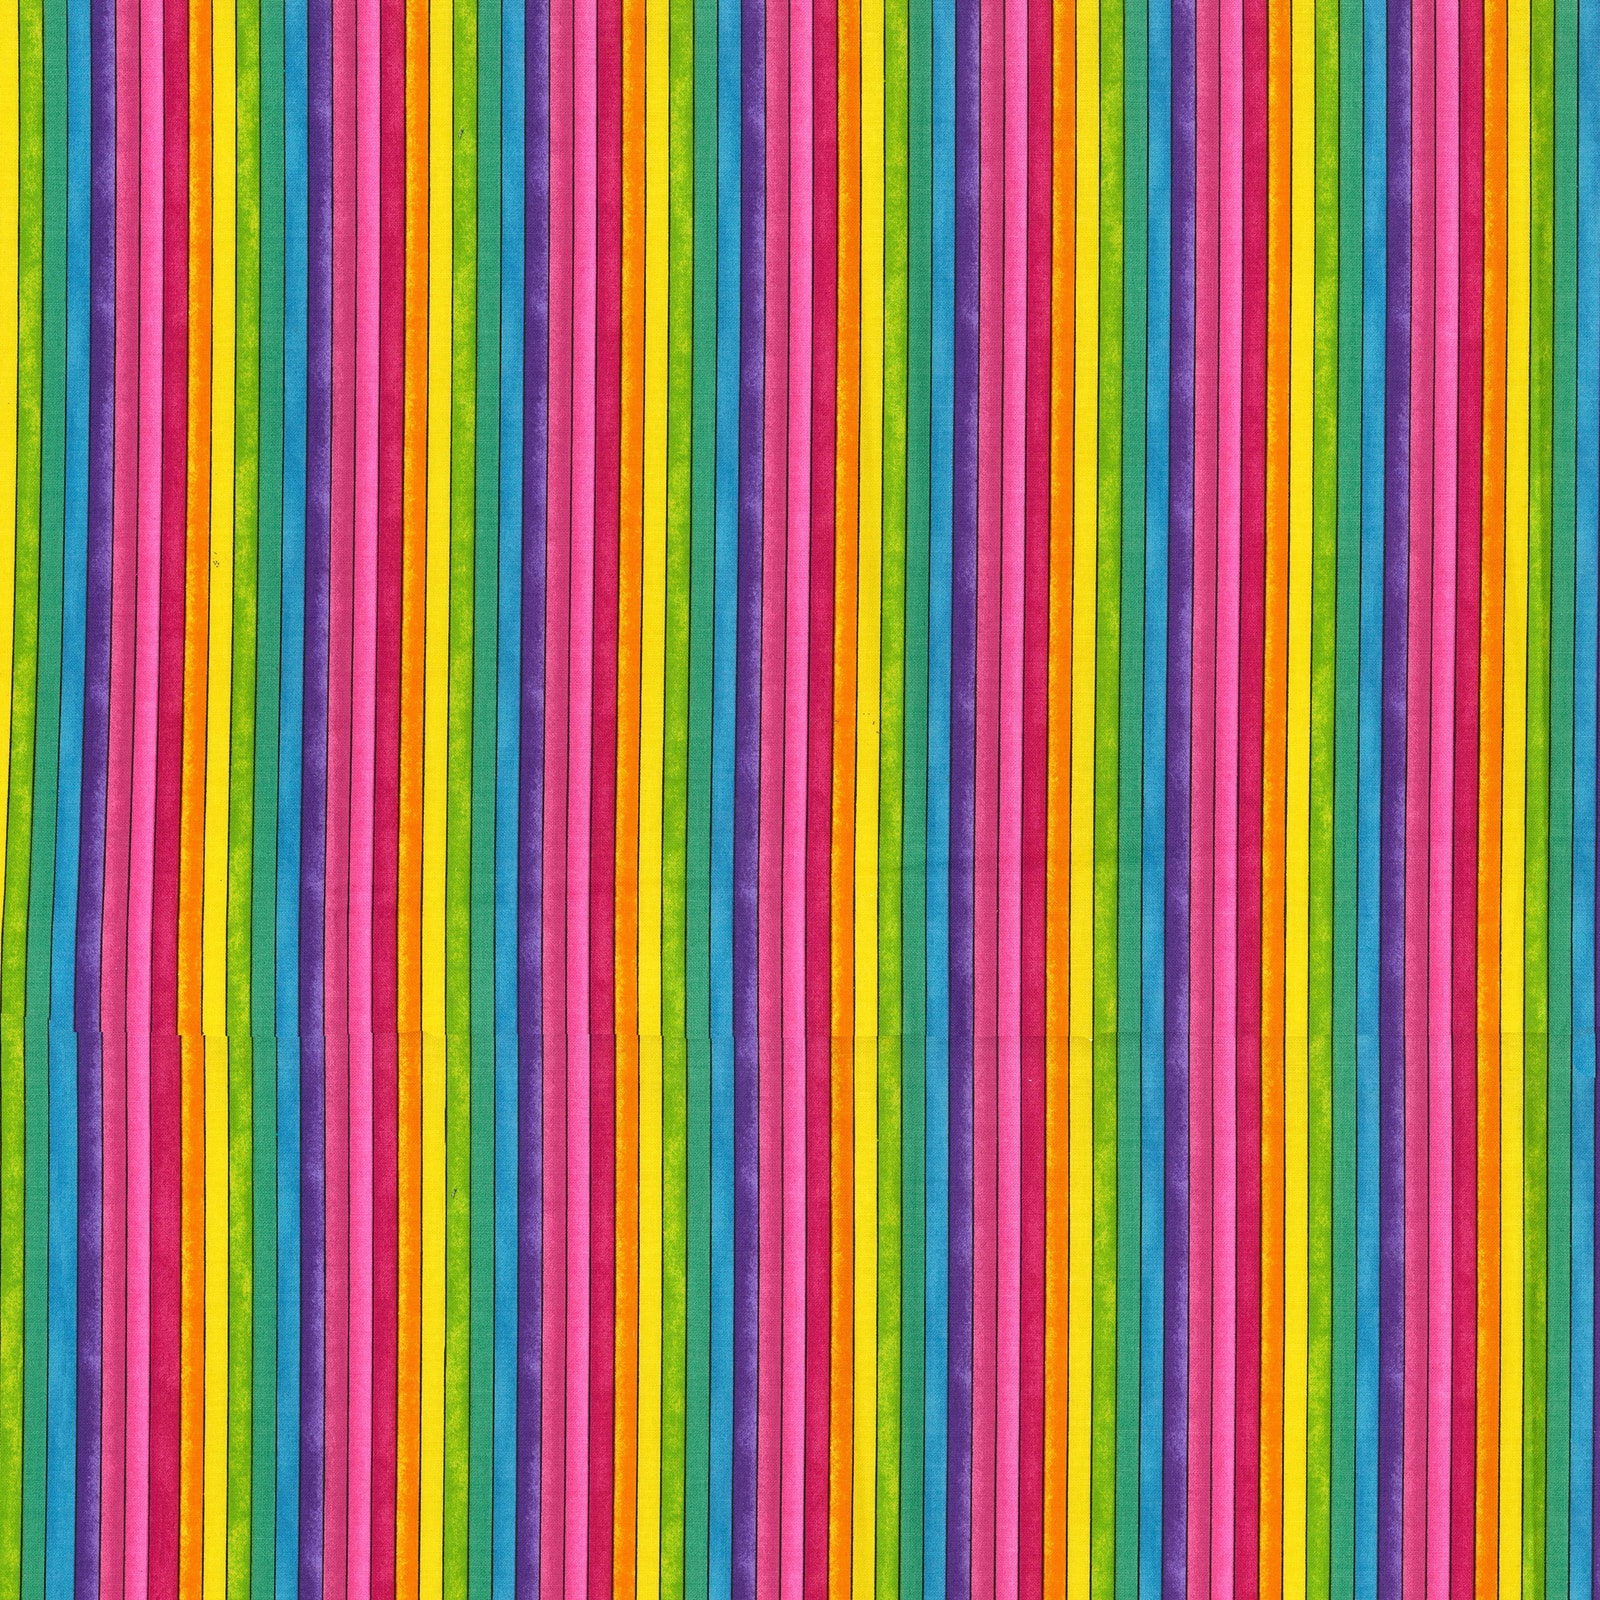 Fabric Traditions Multicolor Bright Stripes Cotton Fabric